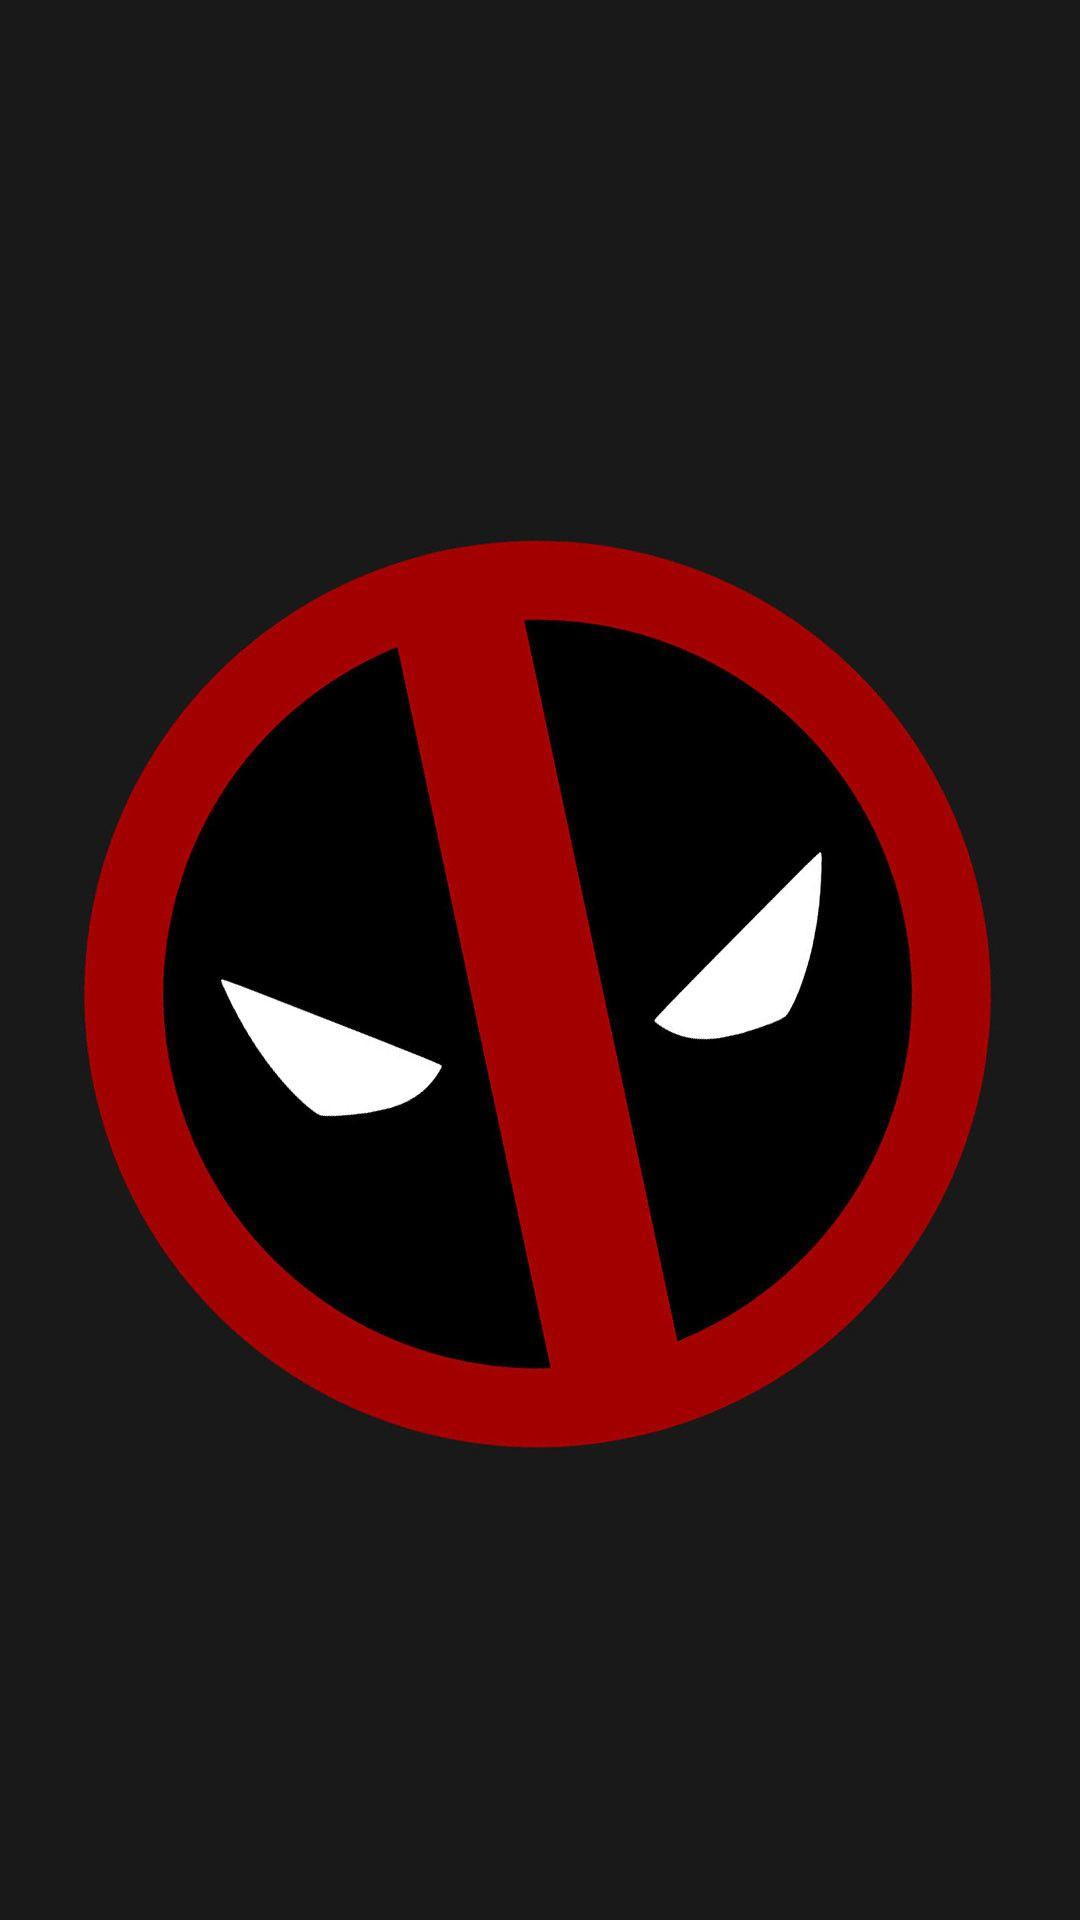 Deadpool Comic Wallpaper For Mobile Wallpaper Download. Deadpool logo wallpaper, Deadpool wallpaper, Deadpool logo